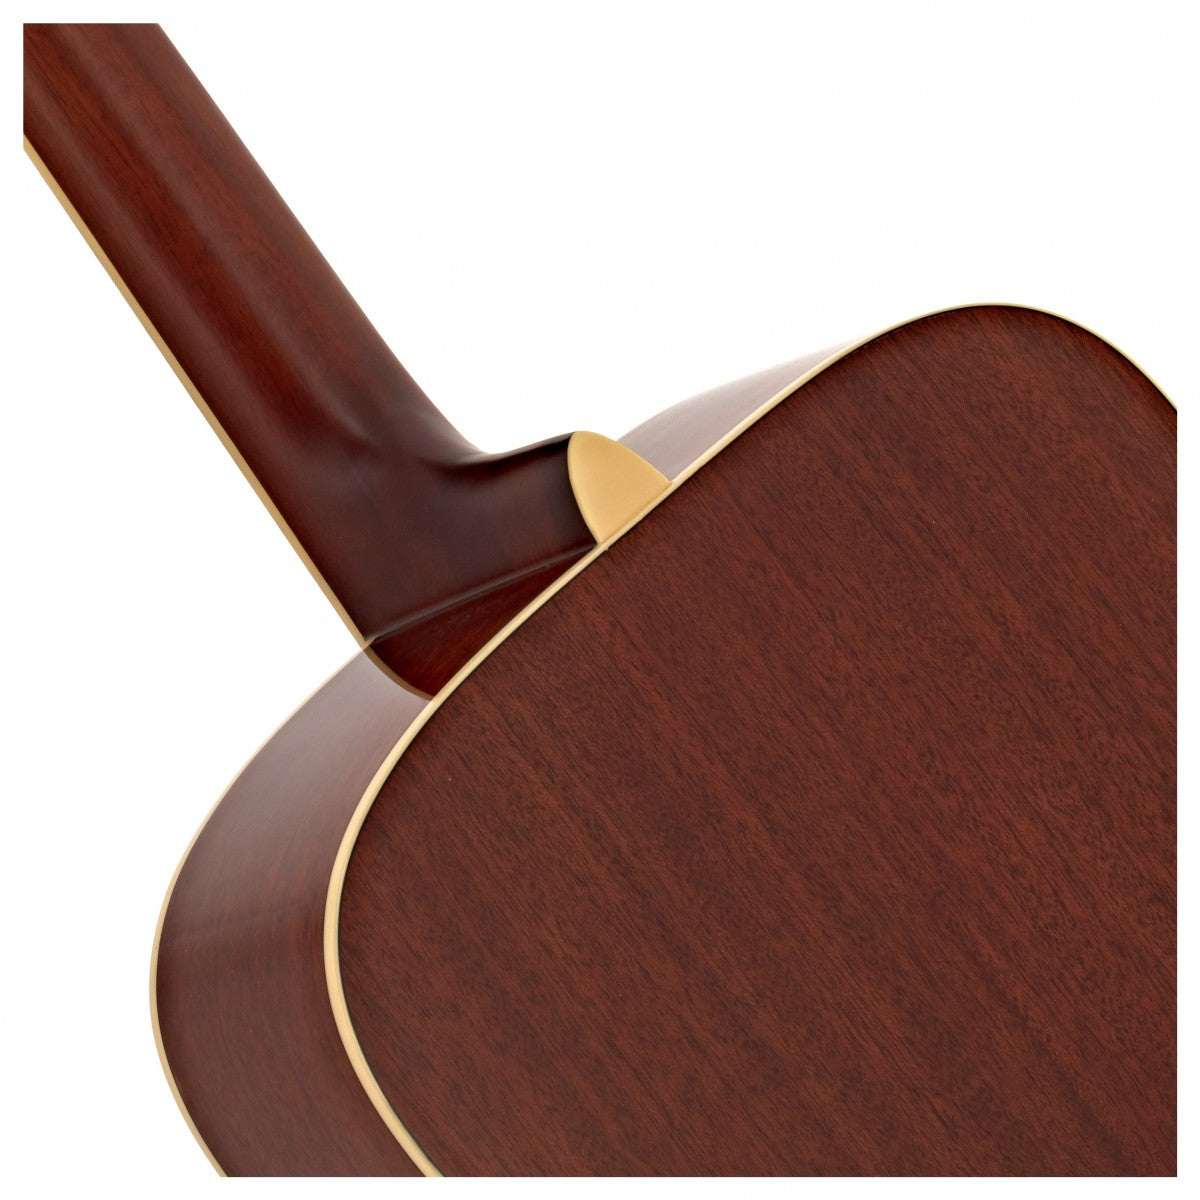 Đàn Guitar Yamaha FG820 Acoustic -